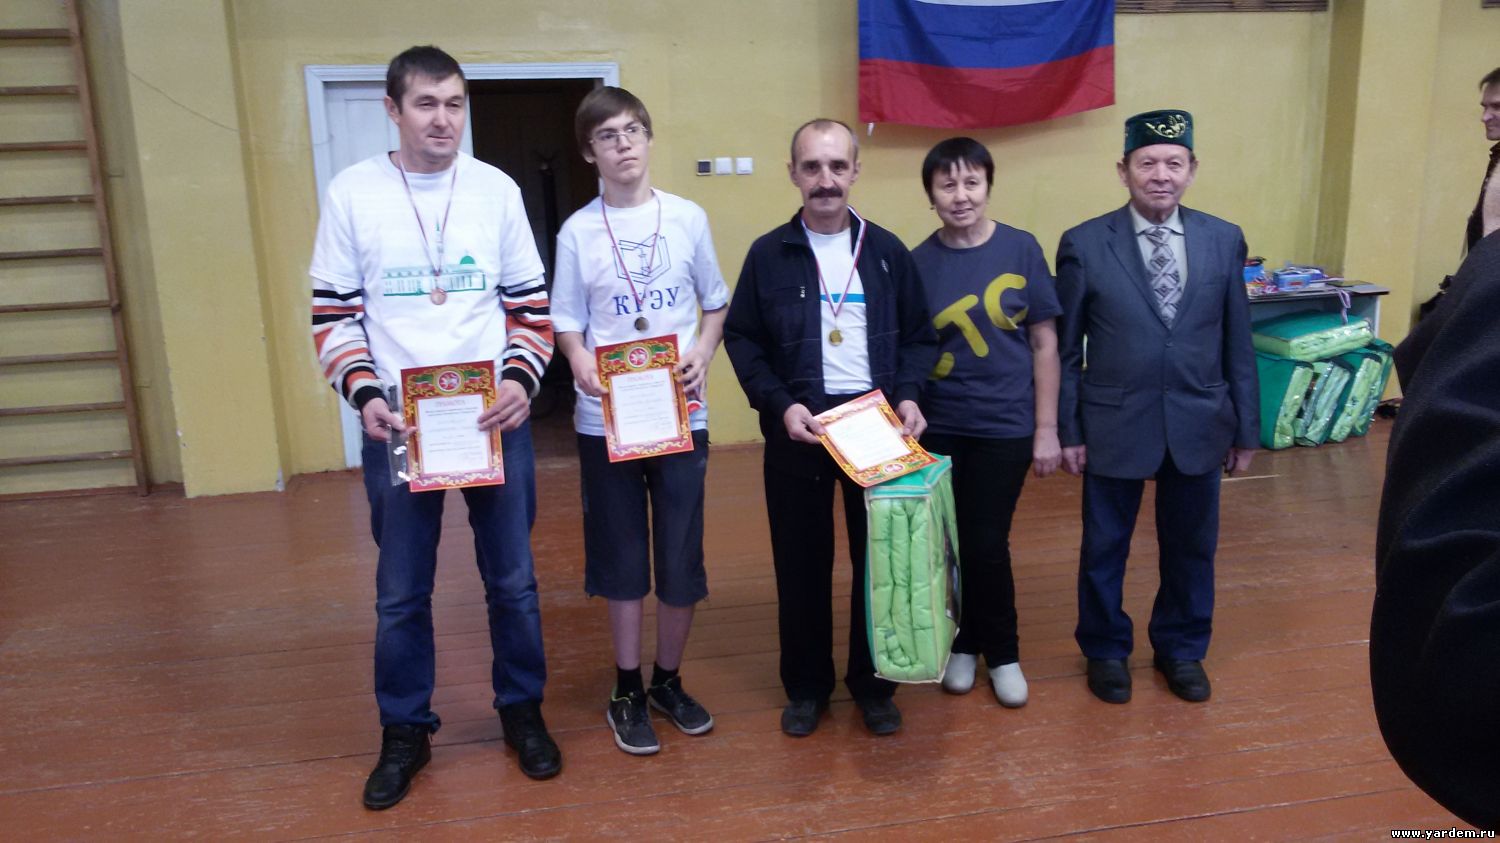 В Казани прошла городская спартакиада для инвалидов под патронажем фонда "Ярдэм". Общие новости